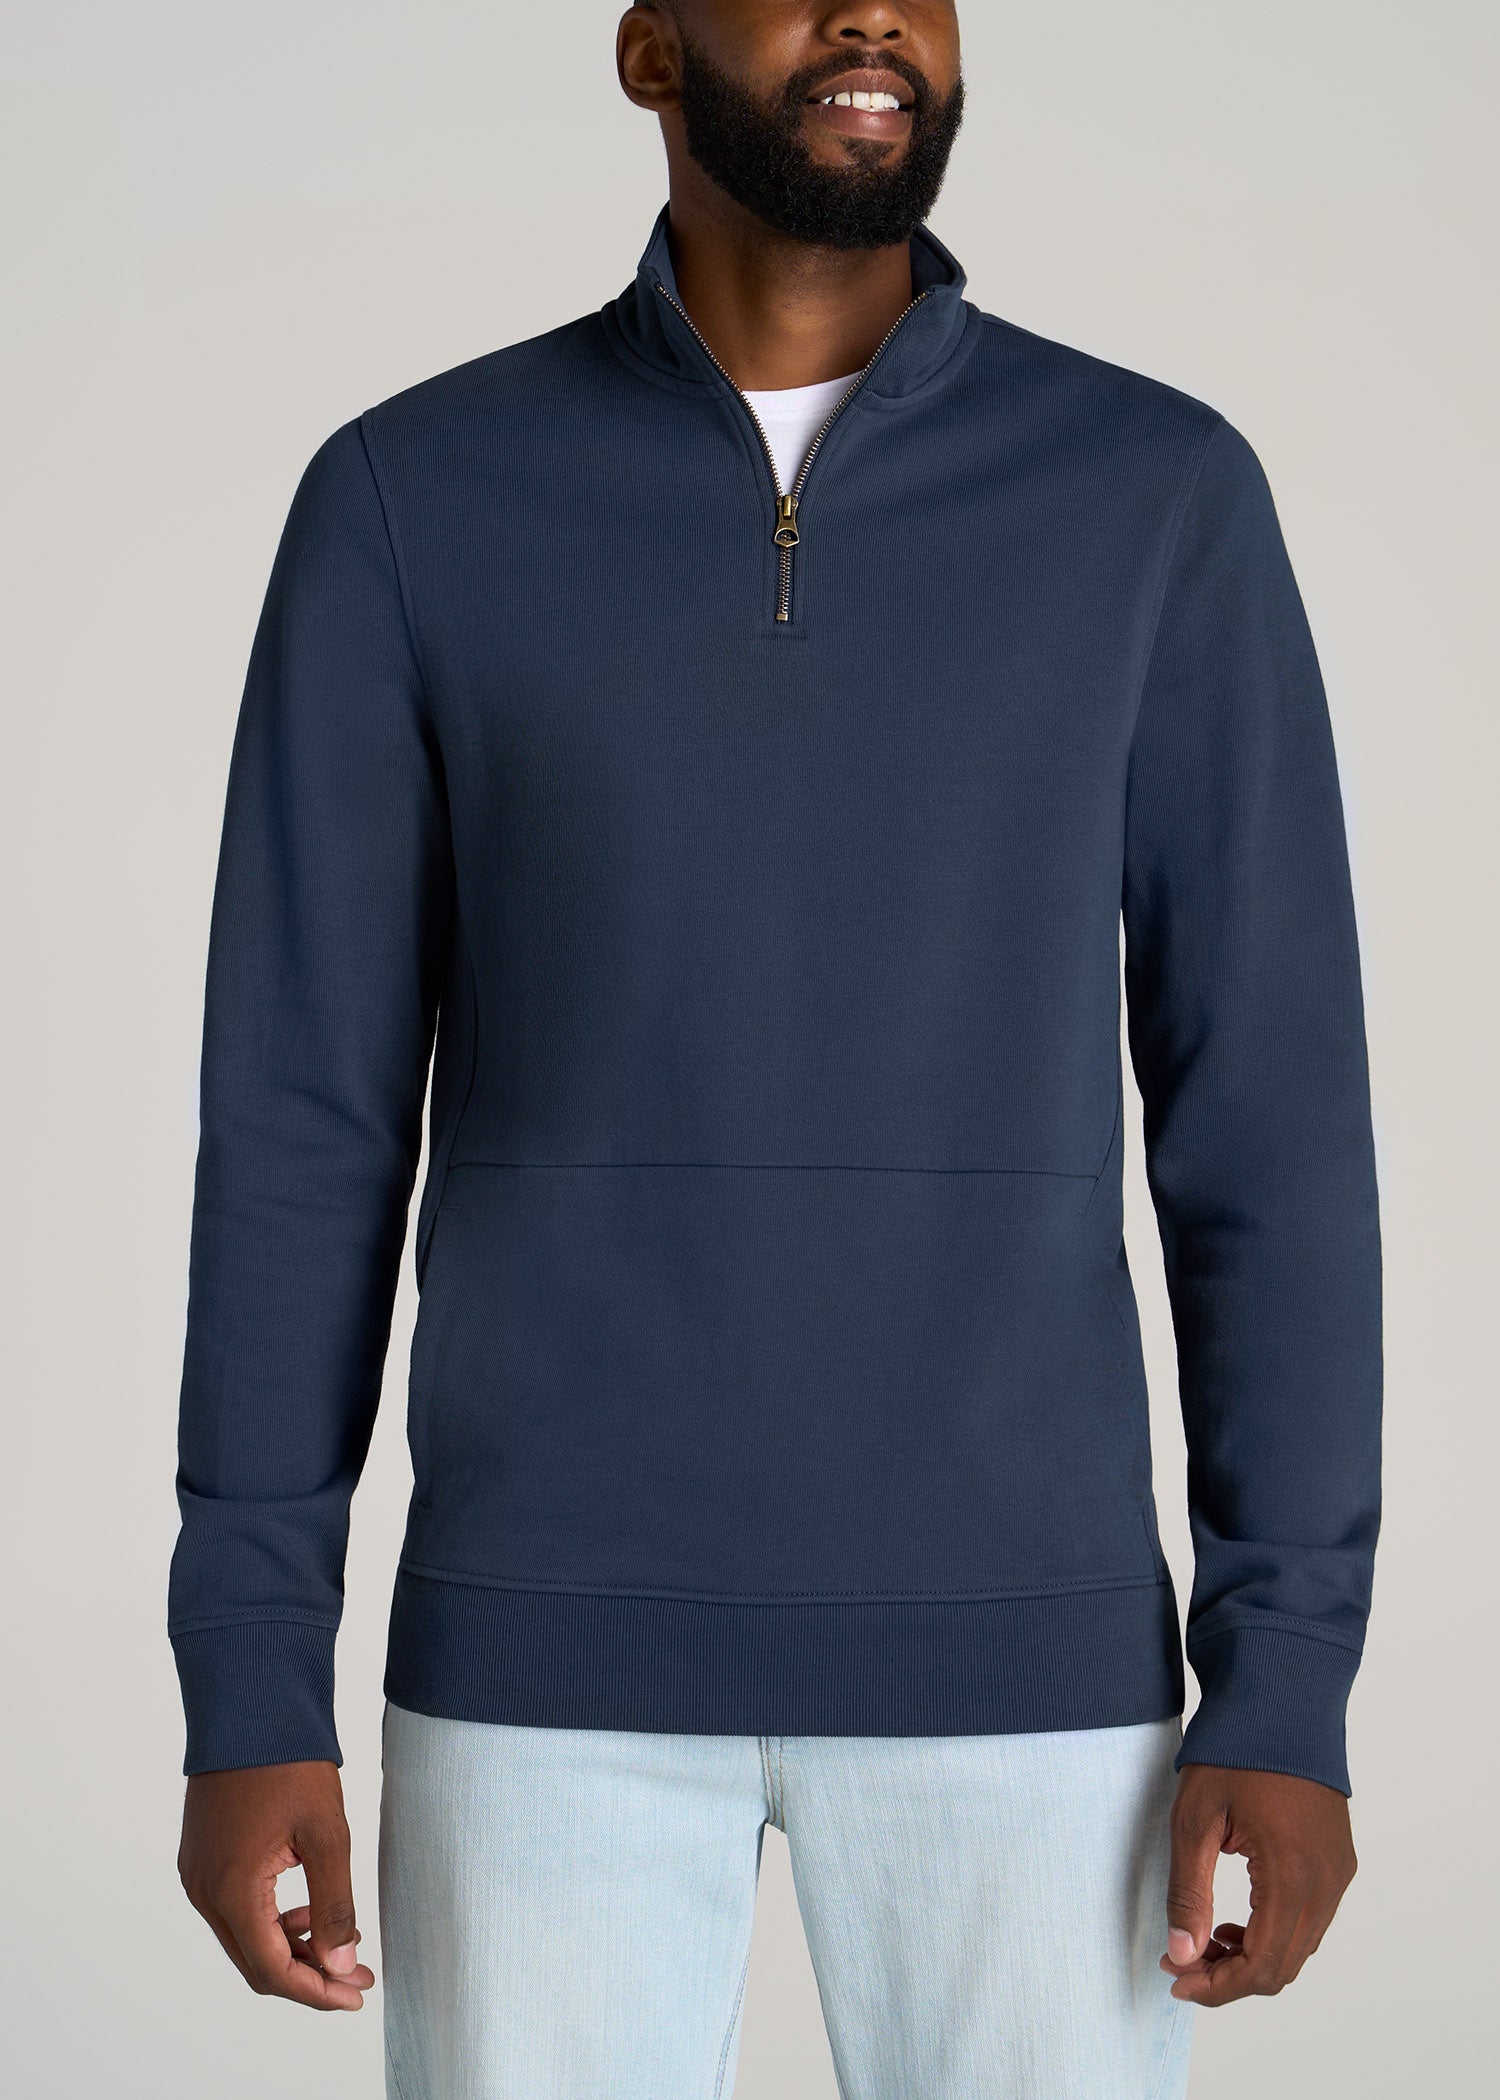 Adult Zip Front Sweatshirt